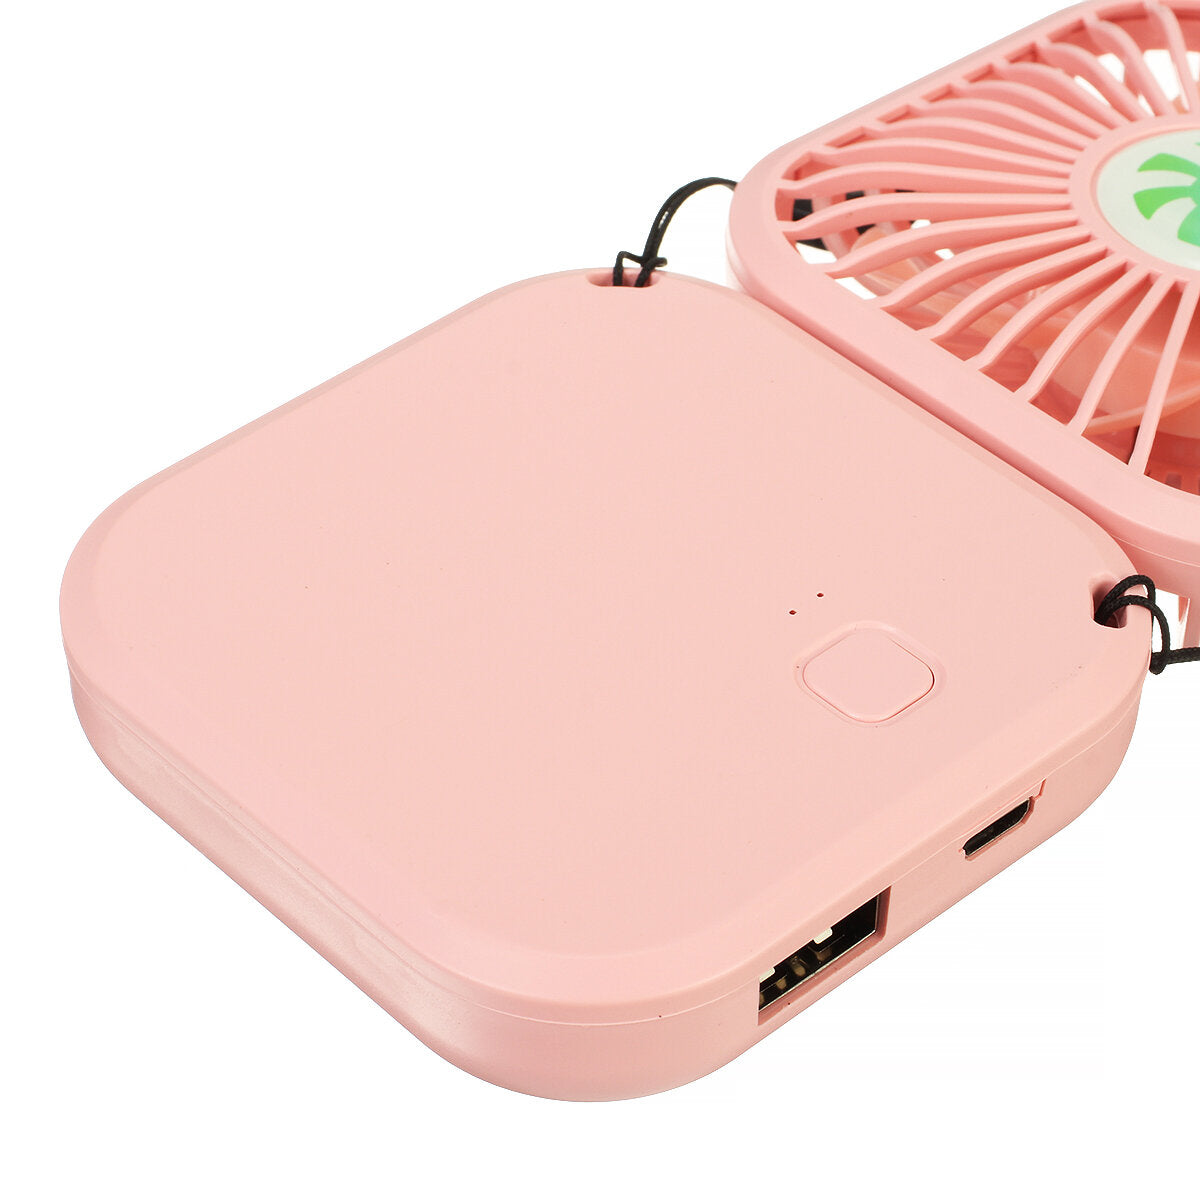 Summer Cooling Fan USB Mini Fan Silent Handheld Fan DC5V 5W 3000mAh Adjustment Rechargeable Hanging Neck Fan